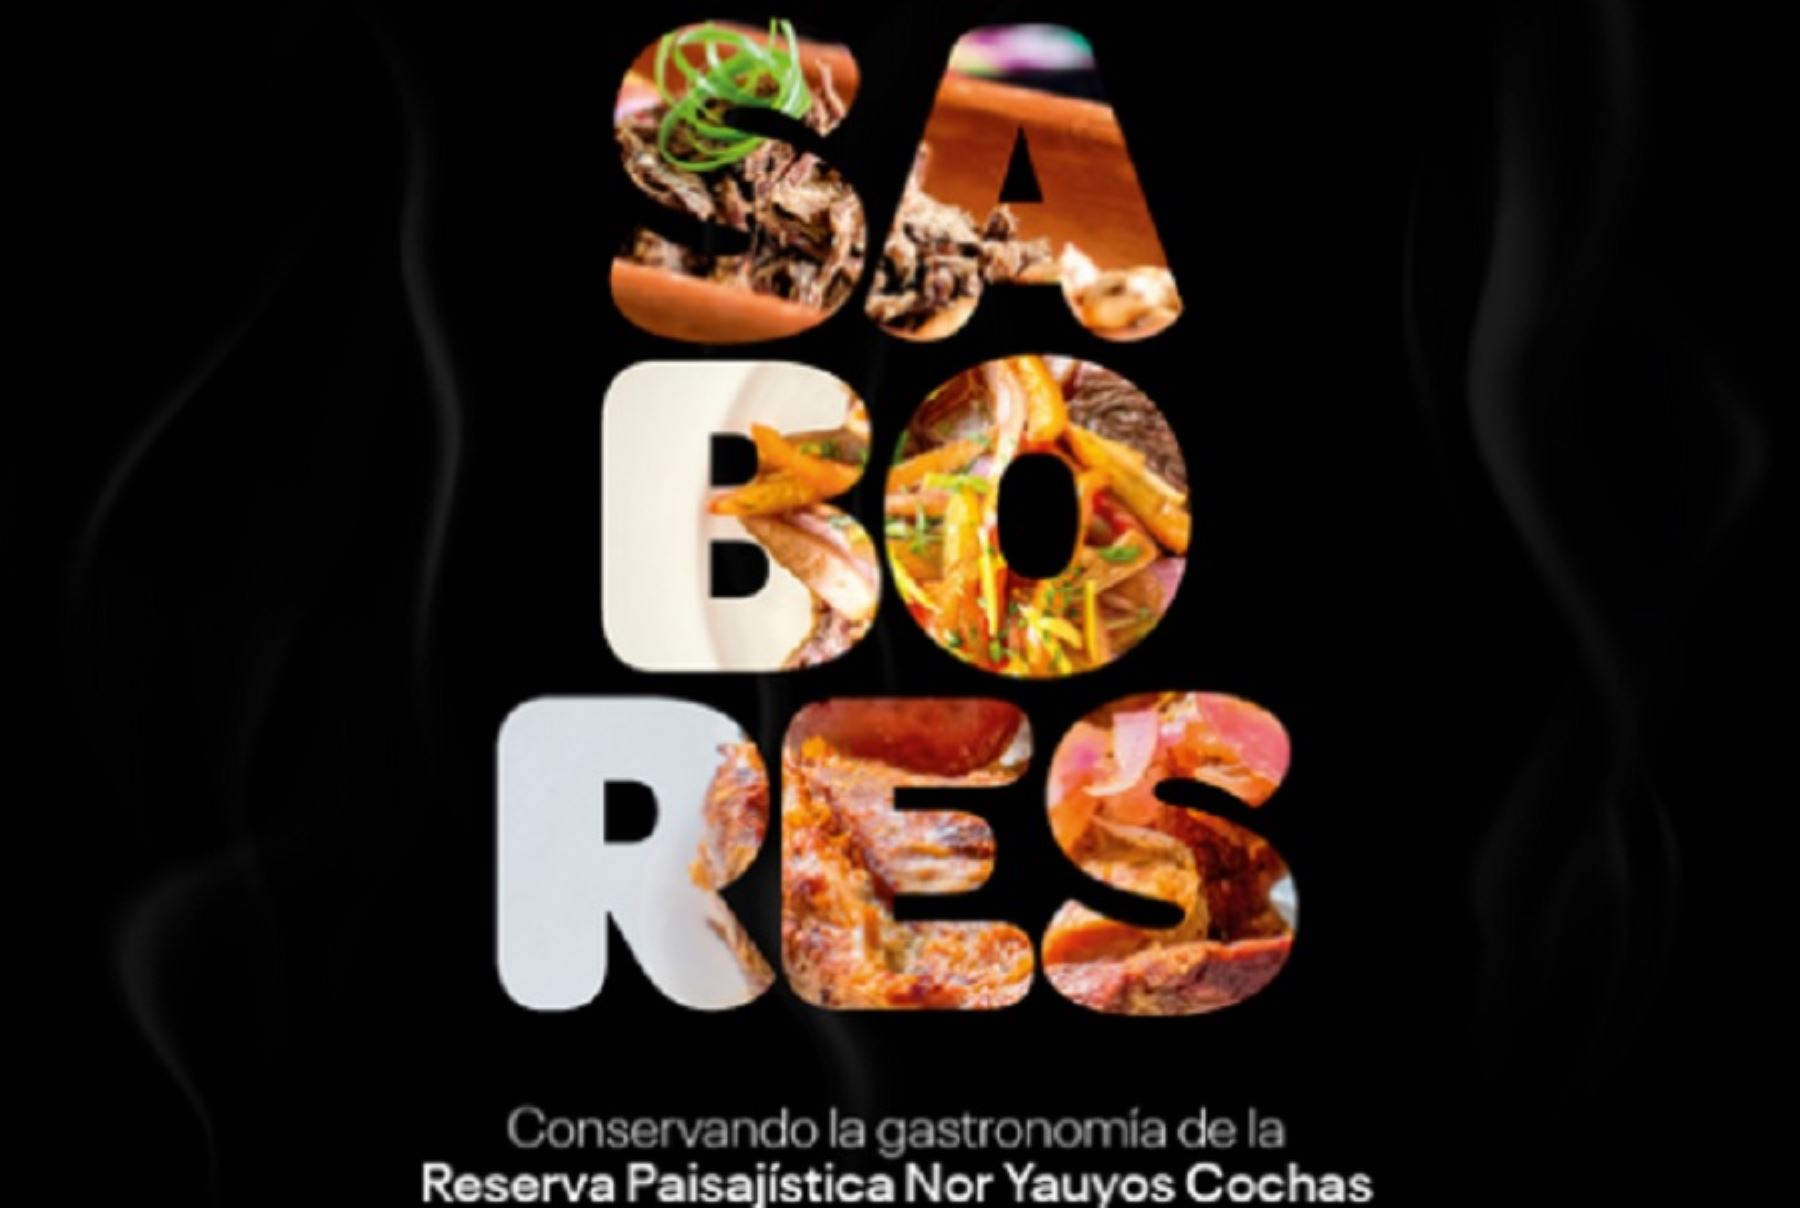 El libro titulado “Sabores: Conservando la gastronomía de la Reserva Paisajística Nor Yauyos Cochas”, se presentará este lunes 1 de agosto en la Feria Internacional del Libro de Lima 2022.